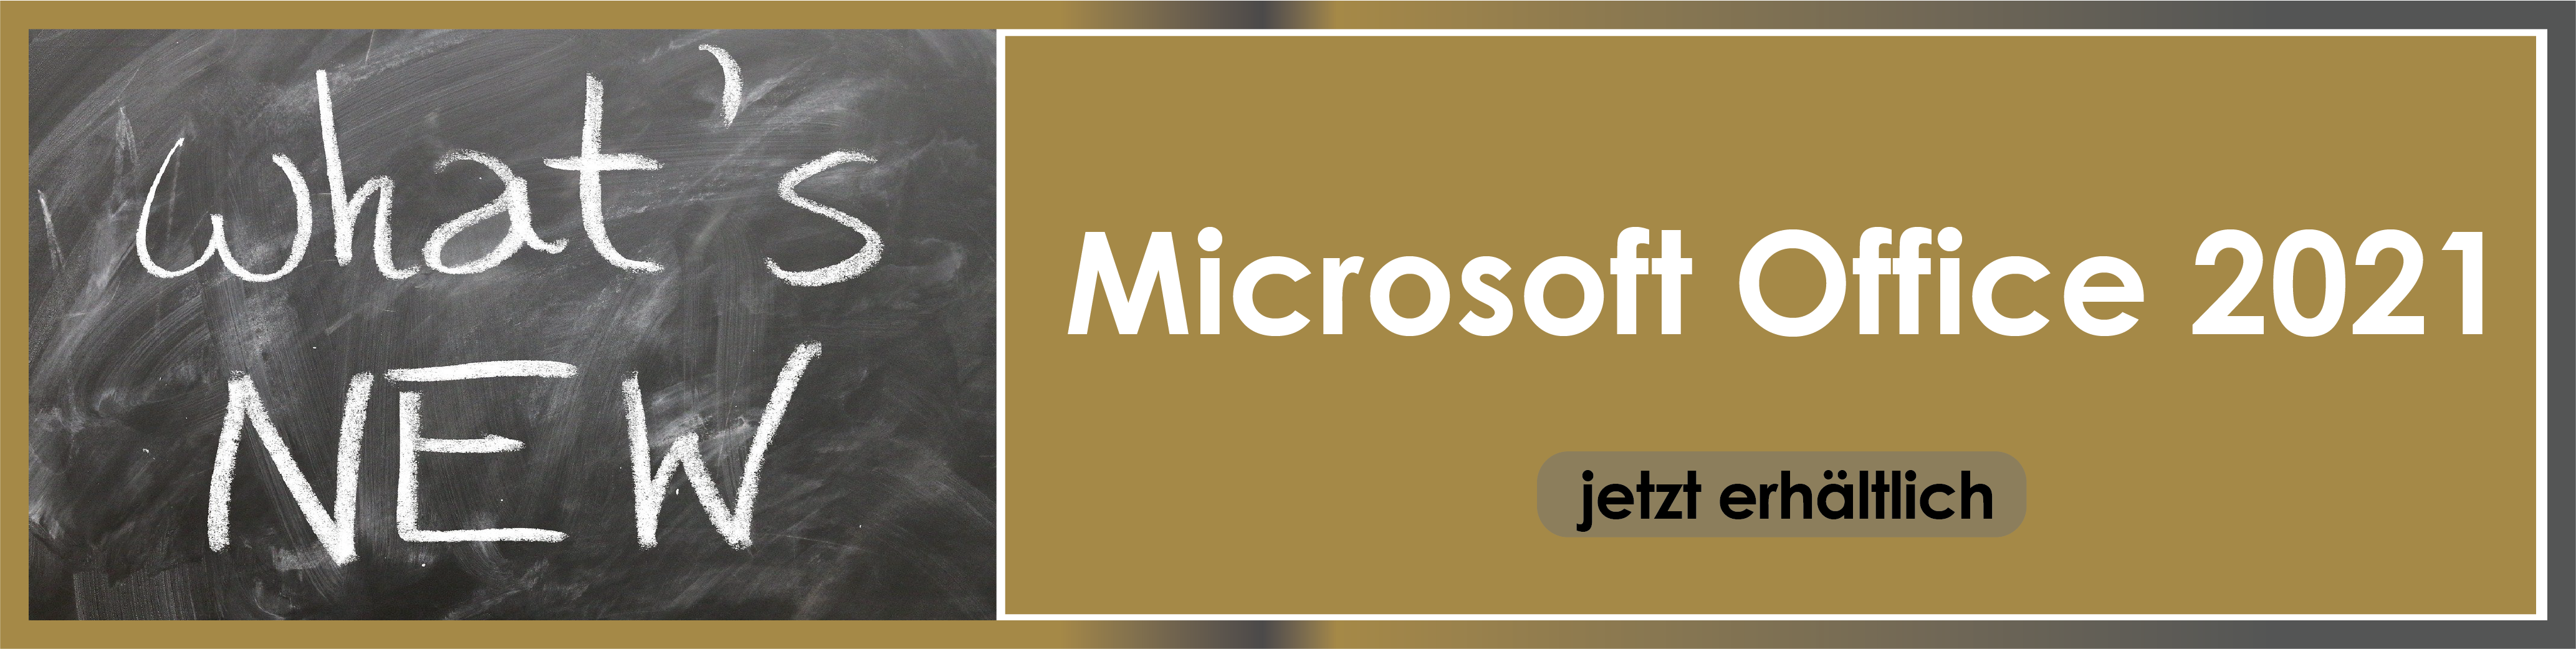 Microsoft Office 2021 für Windows